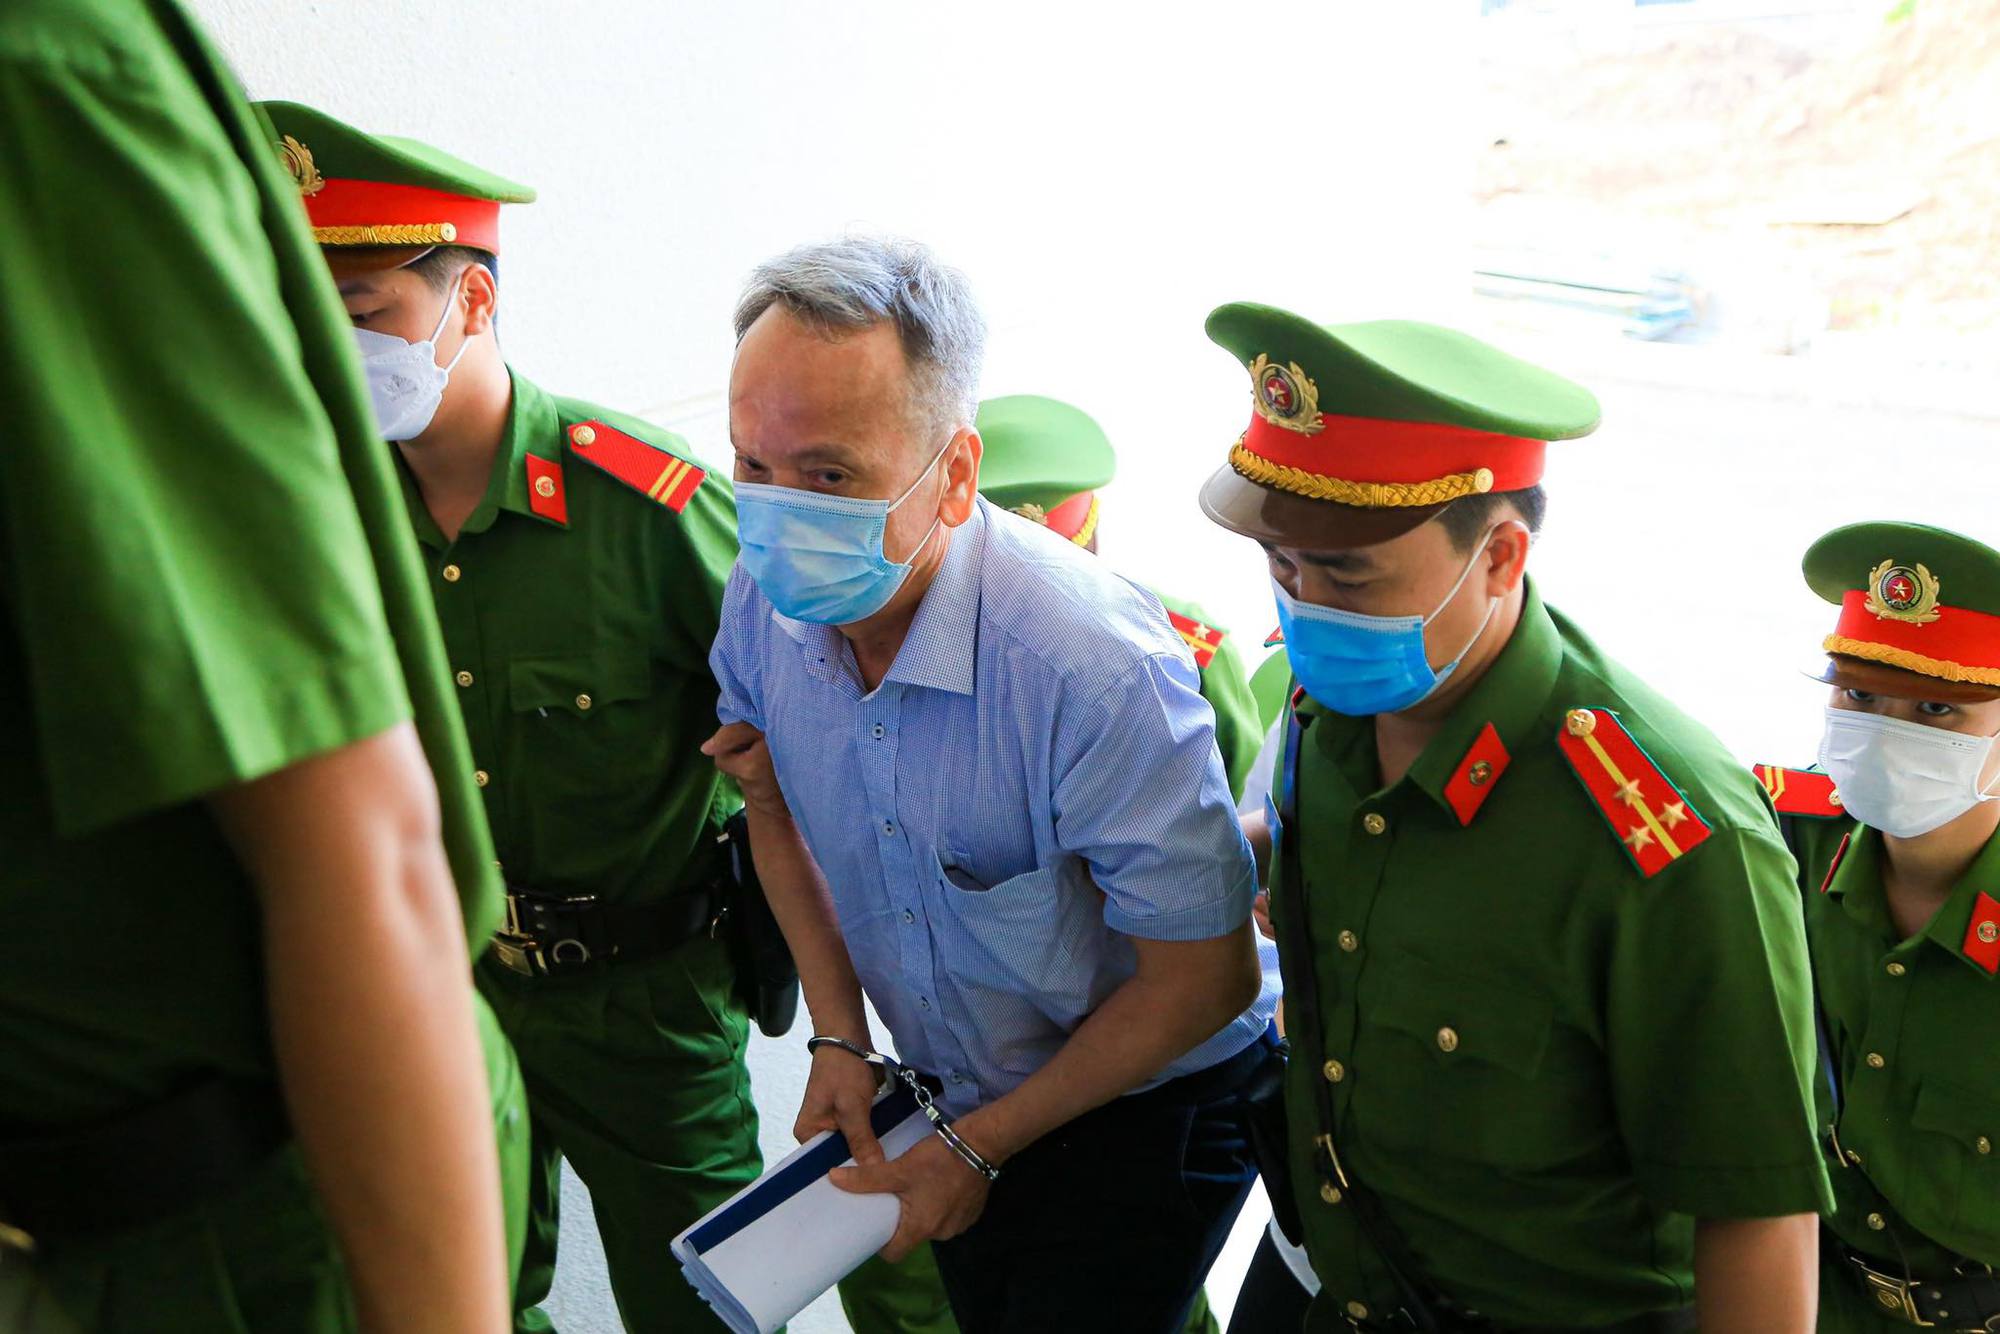 Cựu bí thư Bình Dương Trần Văn Nam cùng các đồng phạm bị dẫn giải tới tòa - Ảnh 5.